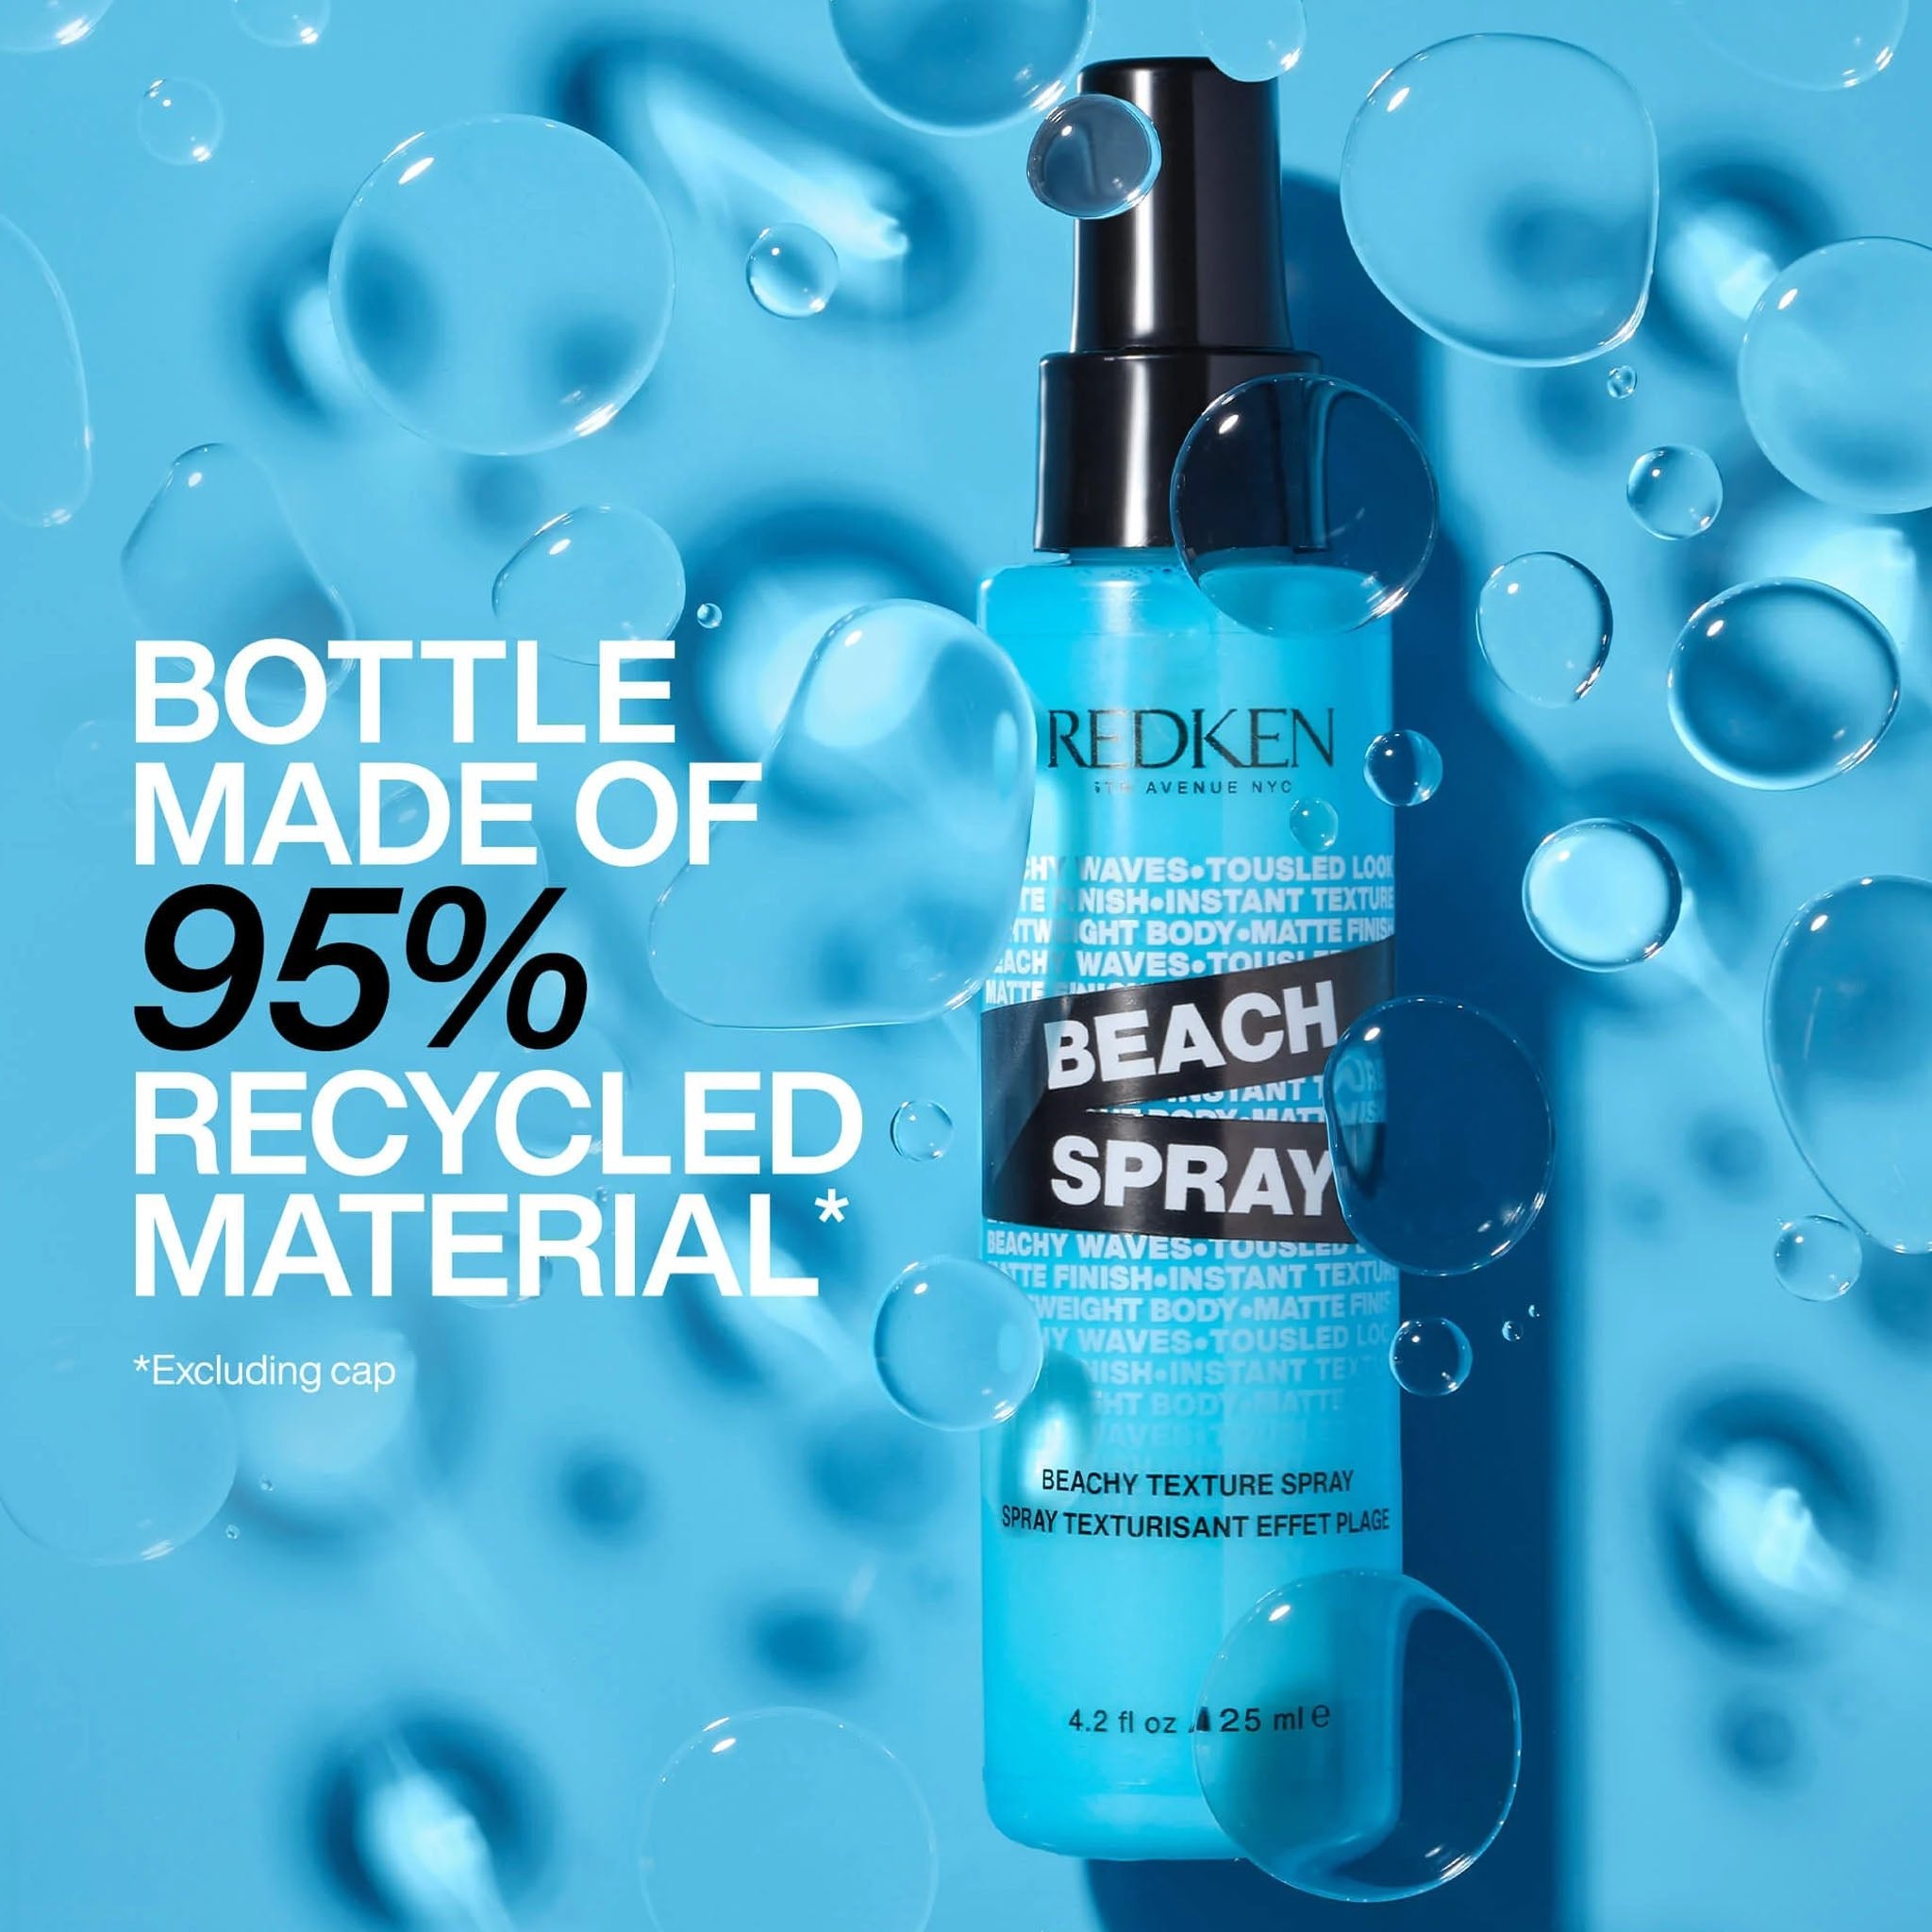 Redken. Spray Texturisant Effet Plage Beach Spray - 125ml - Concept C. Shop